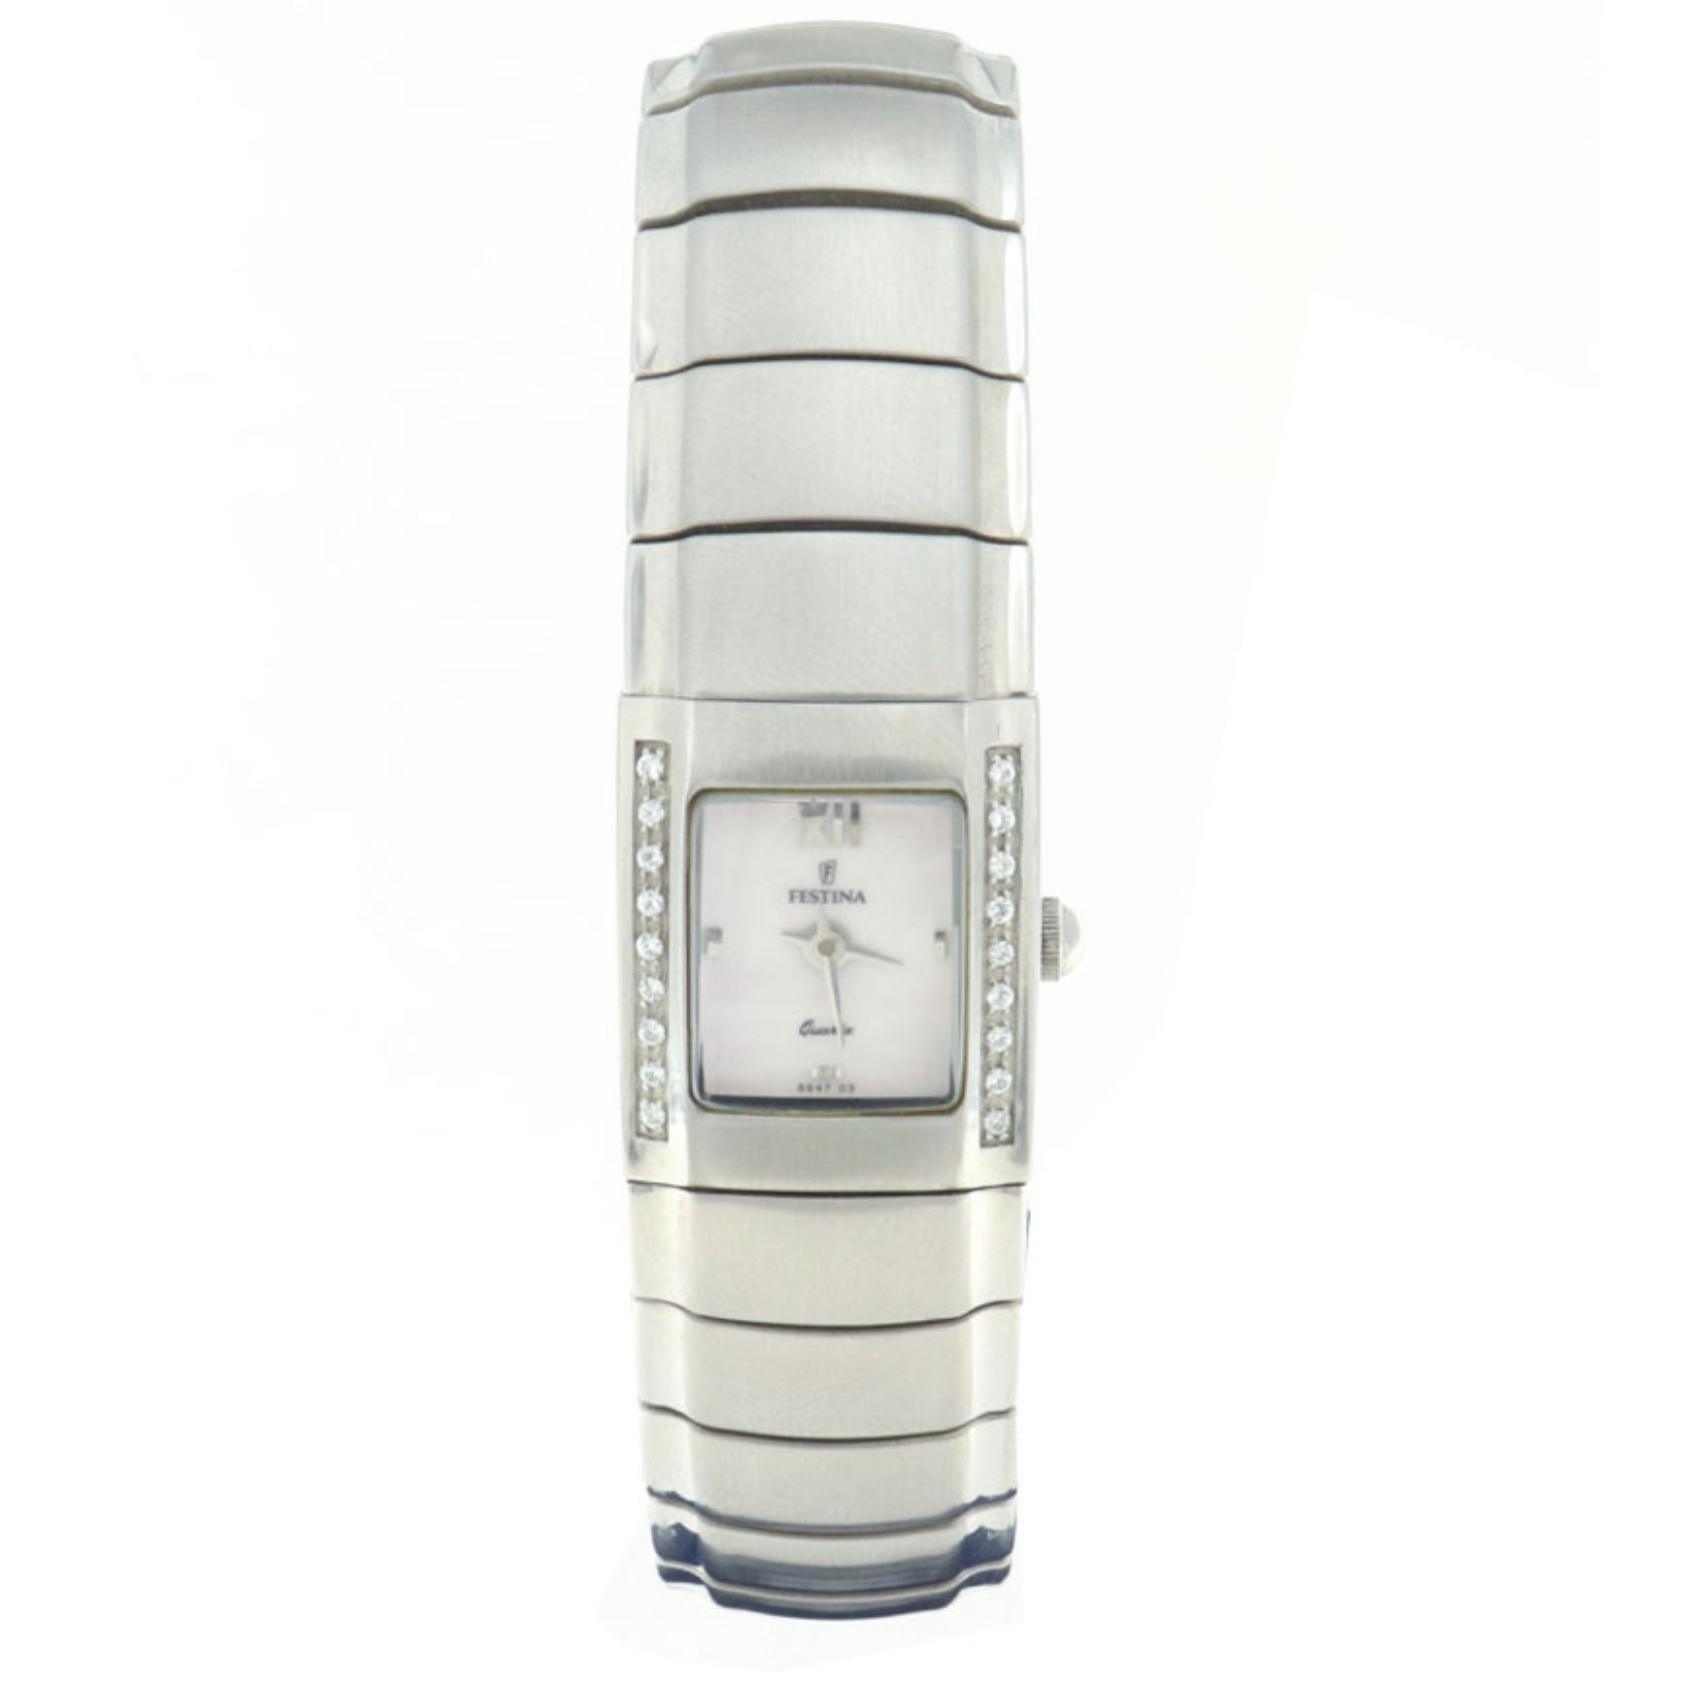 Γυναικείο ρολόι Festina vintage f8947/1 με τετράγωνο σχήμα και ασημί ατσάλινο μπρασελέ, άσπρο καντράν διαστάσεων 20Χ20mm. 